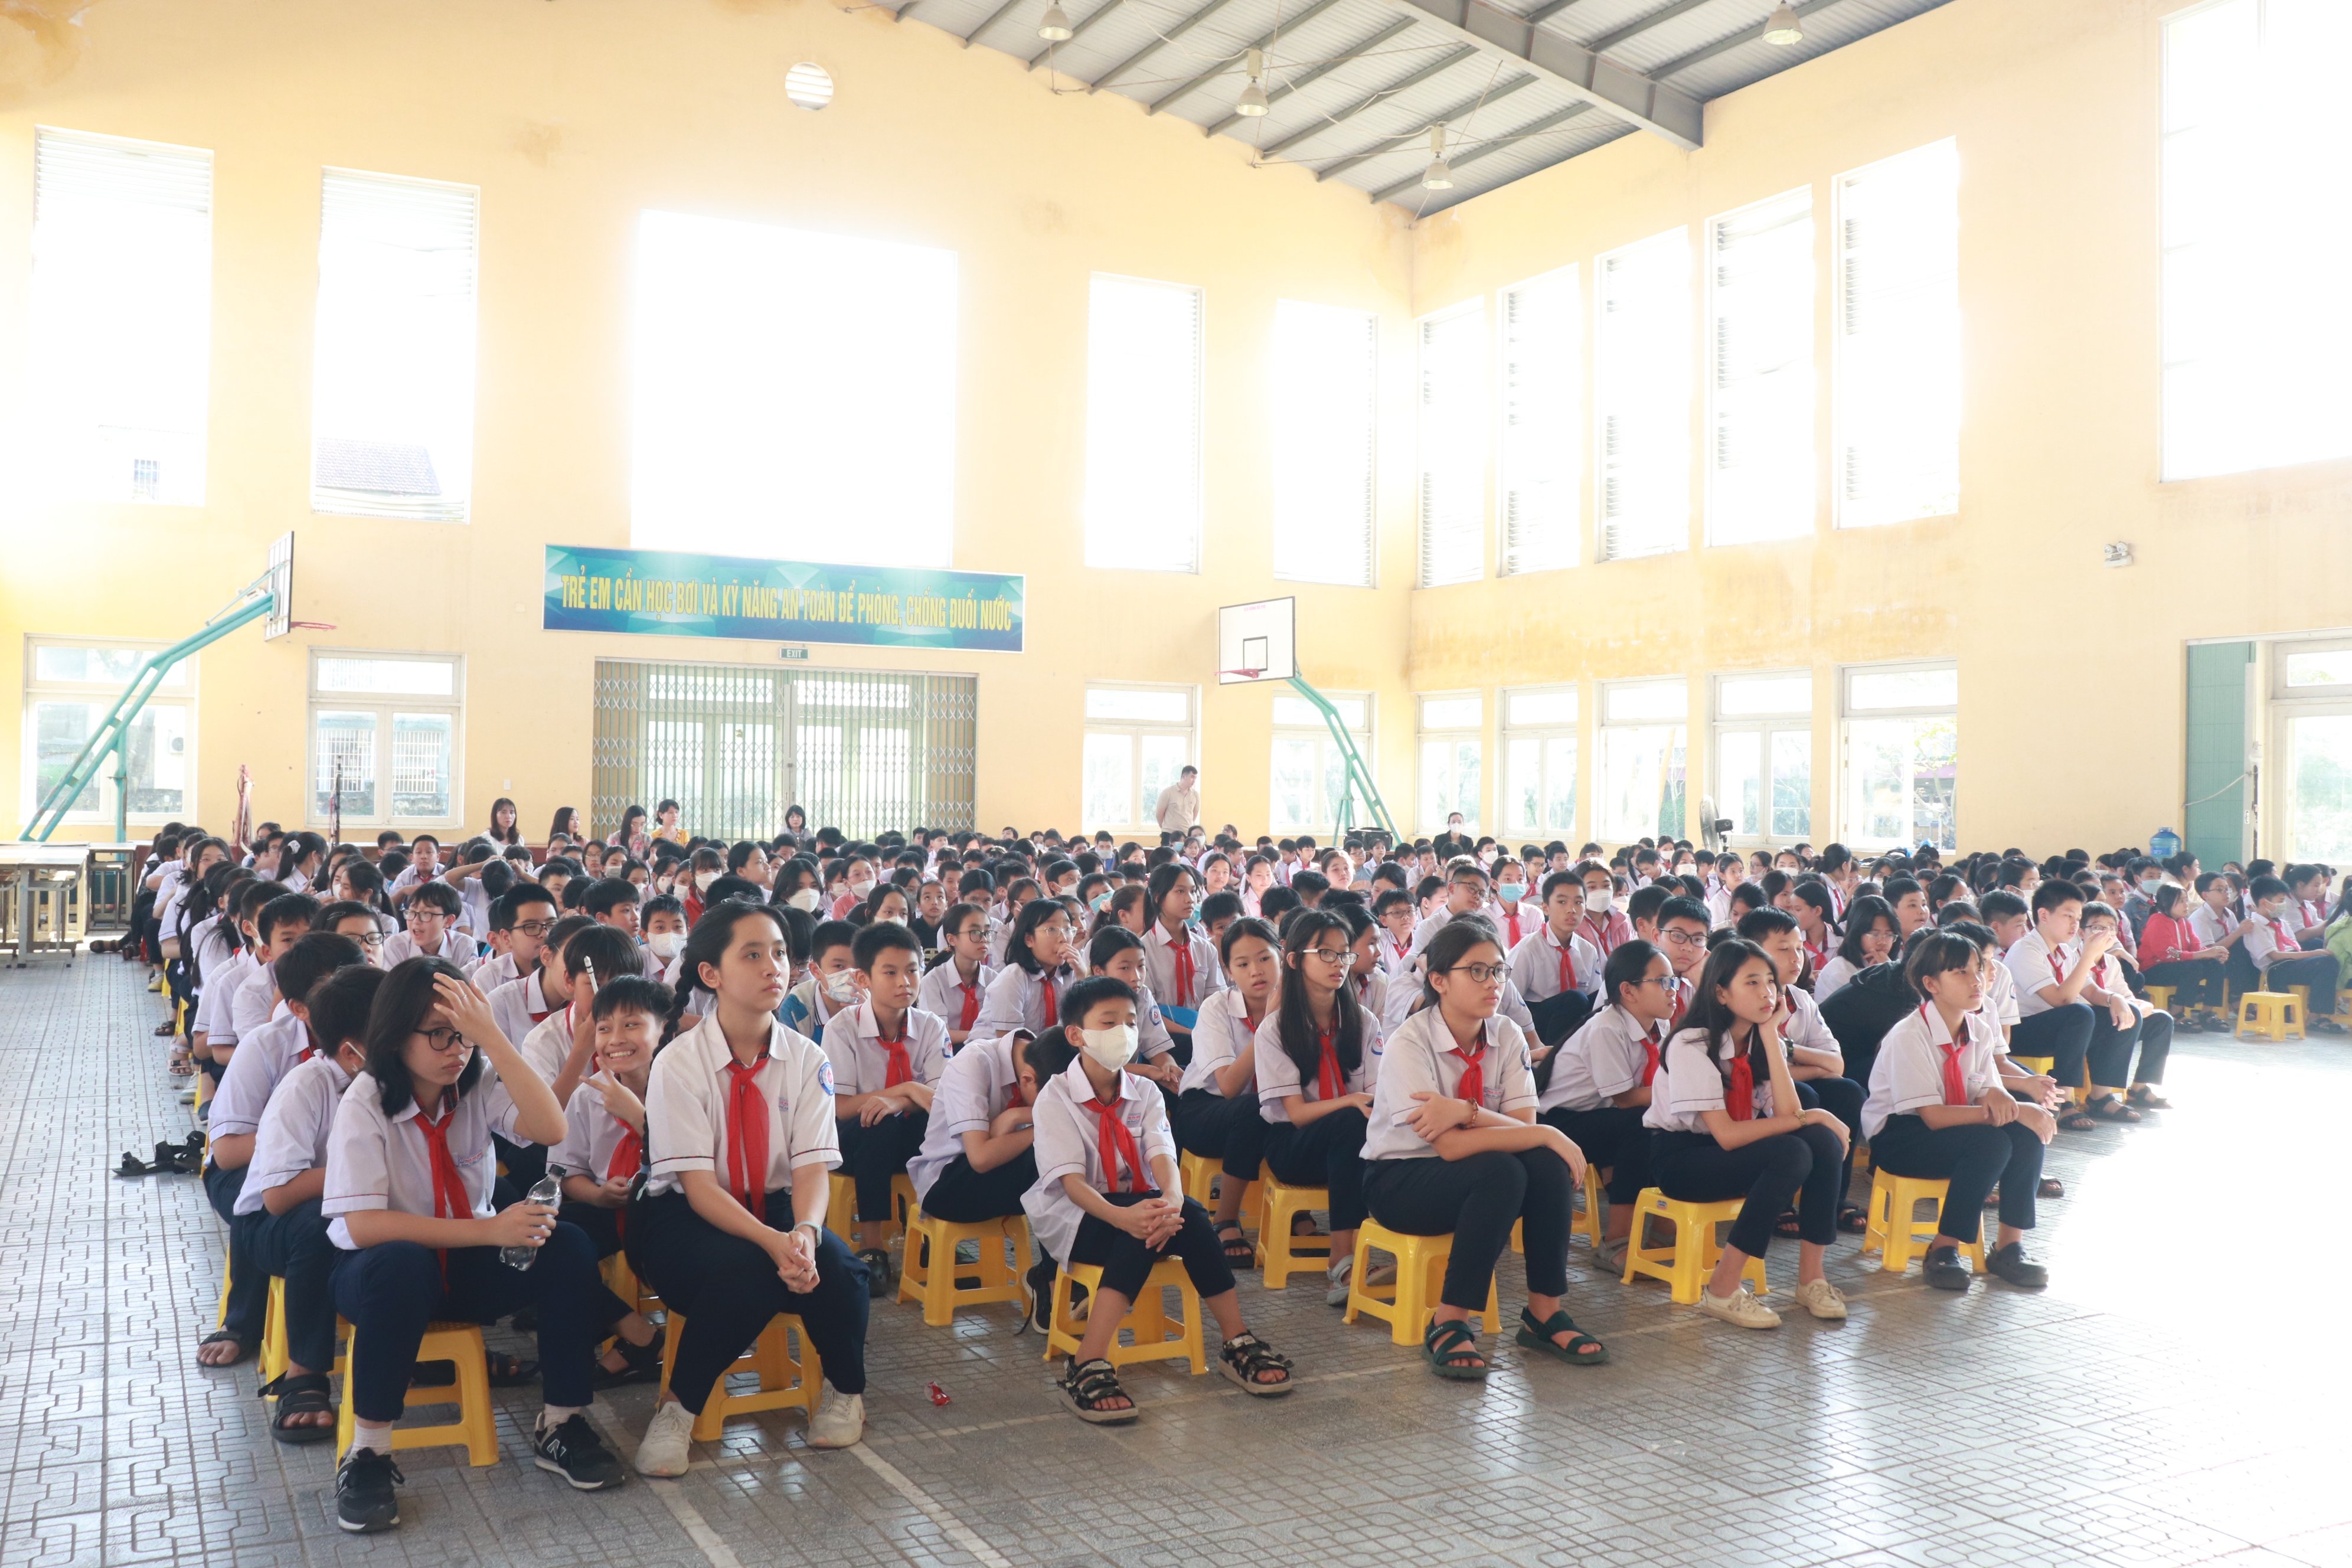 Chương trình có sự tham gia của hơn 300 em học sinh lớp 6 trường THCS Phạm Văn Đồng